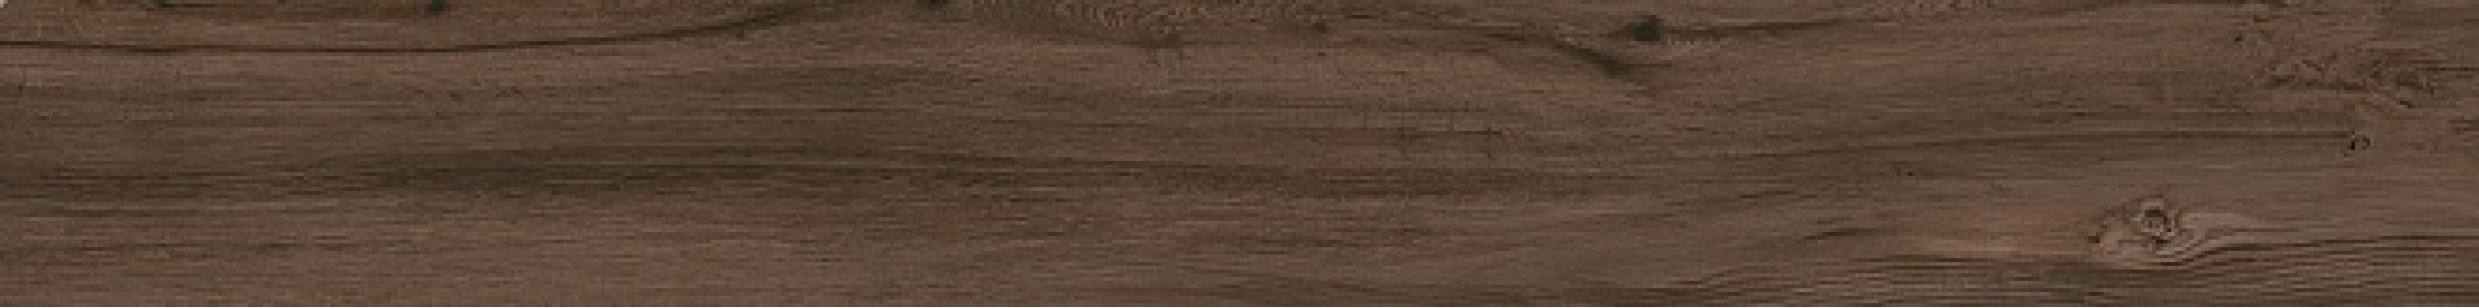 Подступенок Kerama Marazzi Сальветти коричневый 119.5x10.7 SG506800R\1